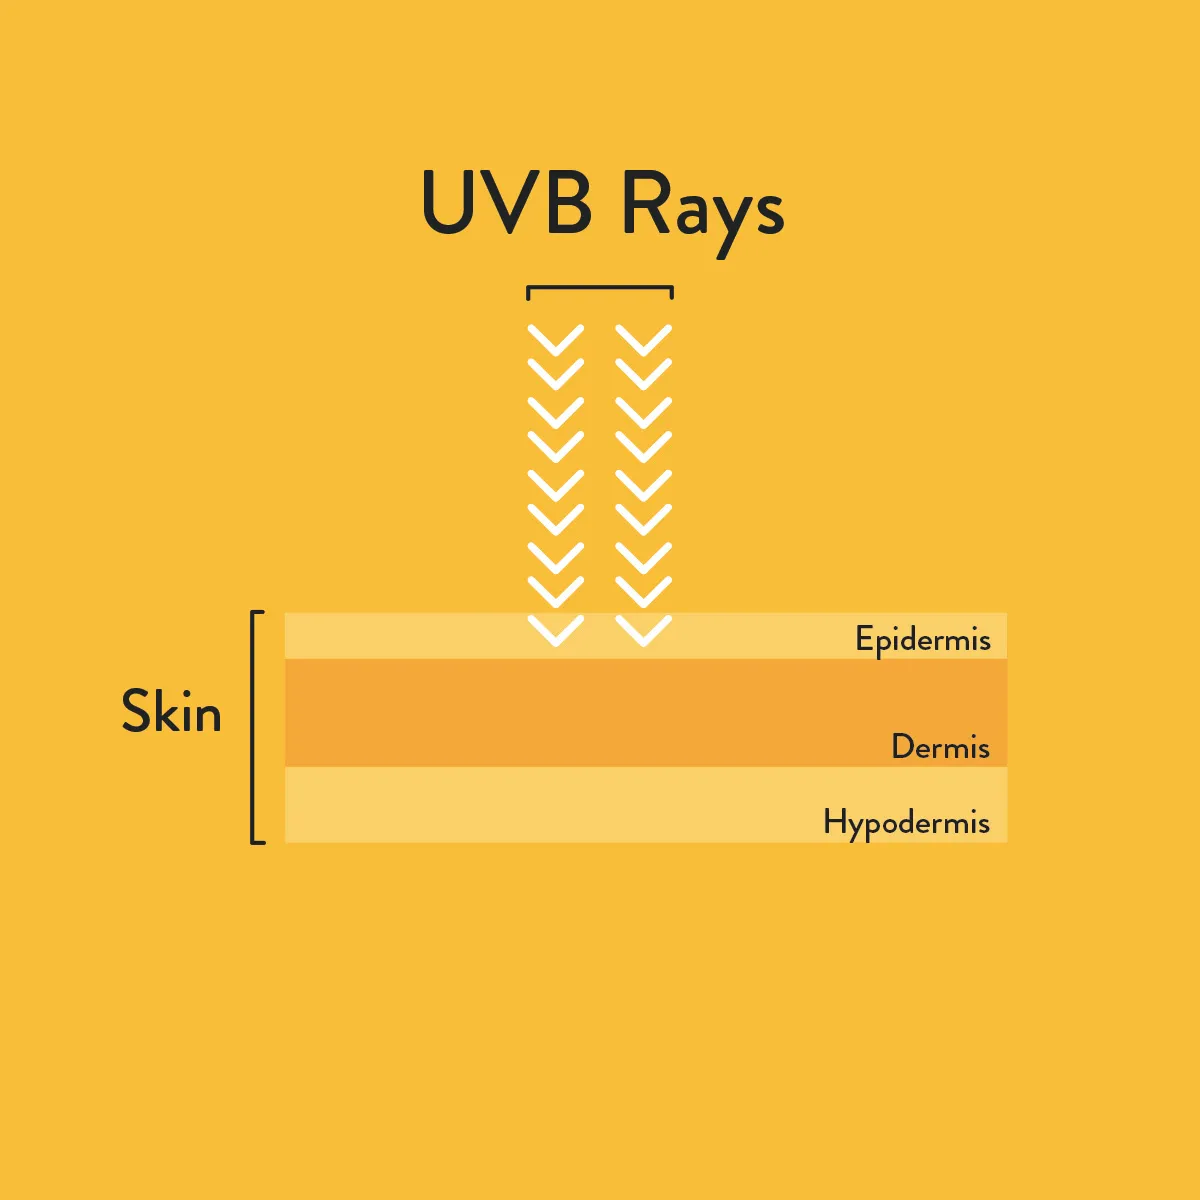 UVB informative diagram